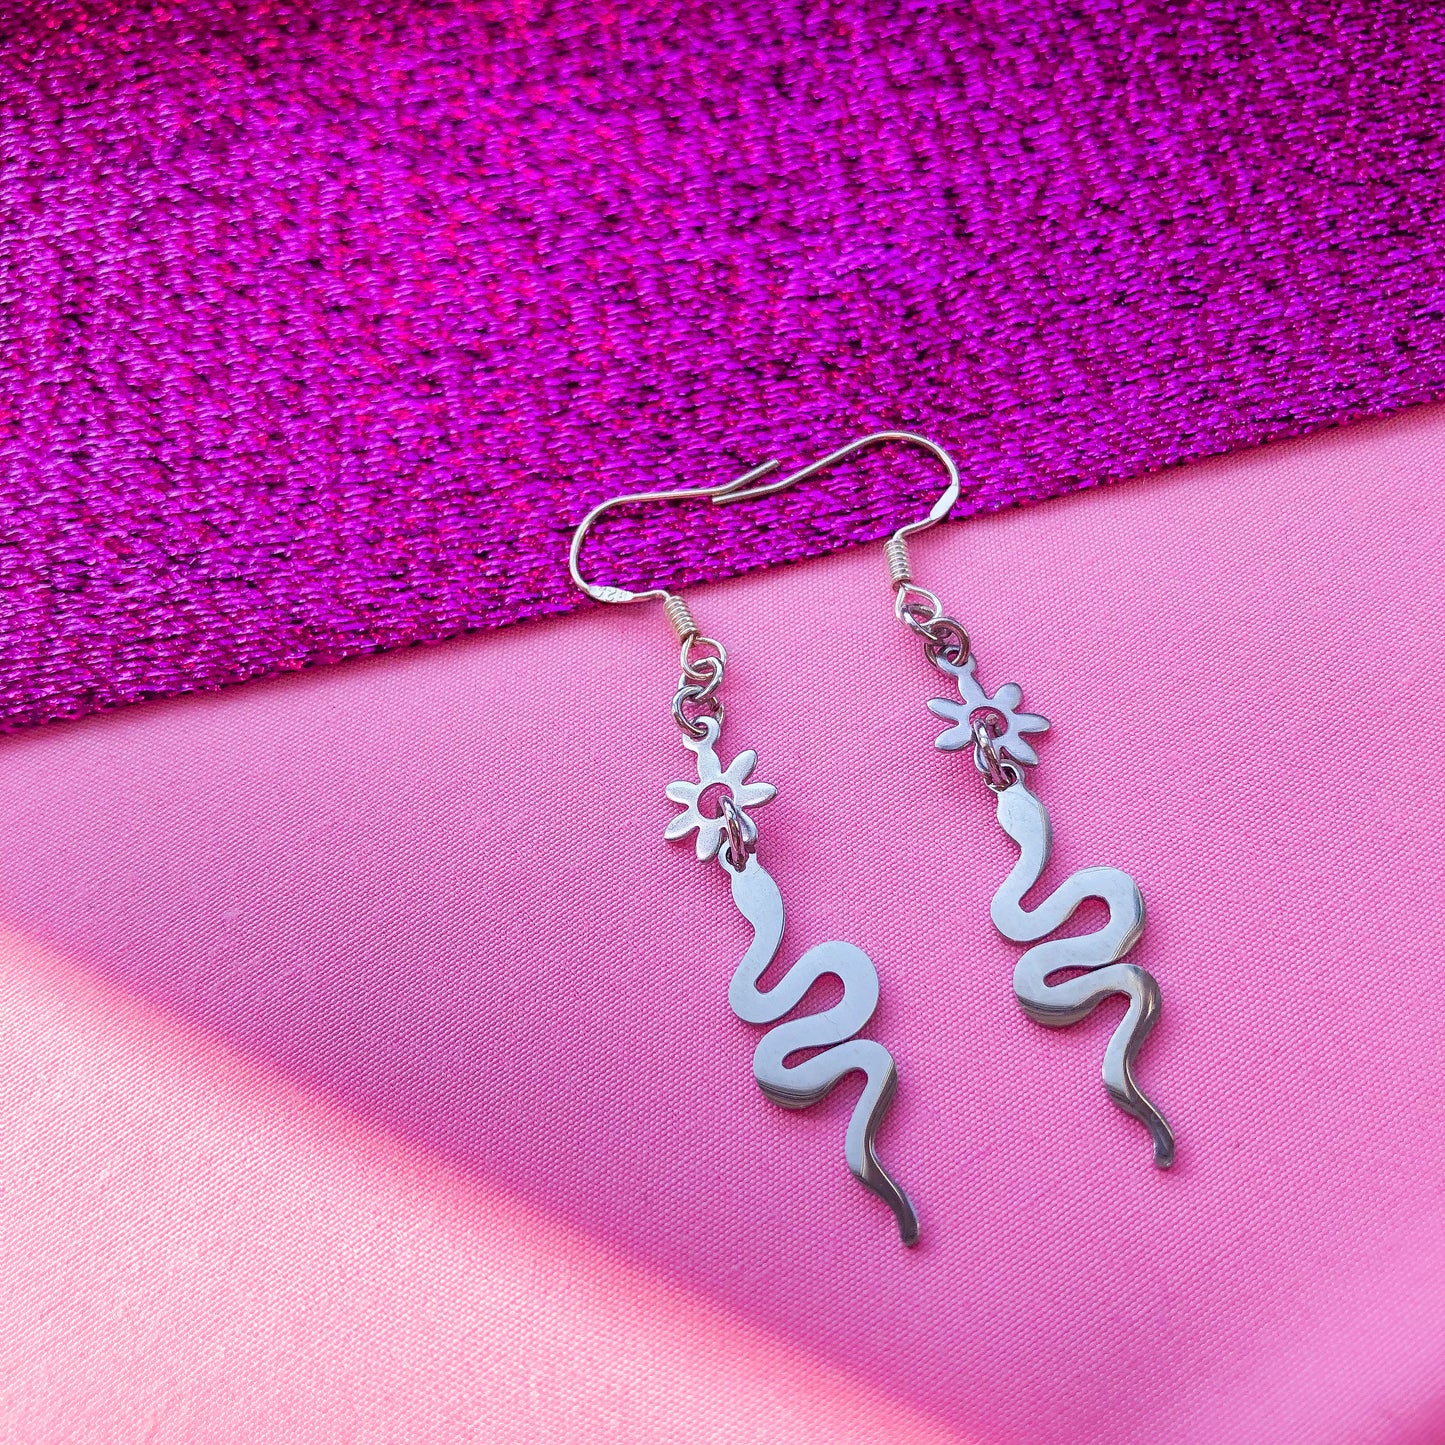 Snake and flower stainless steel earrings